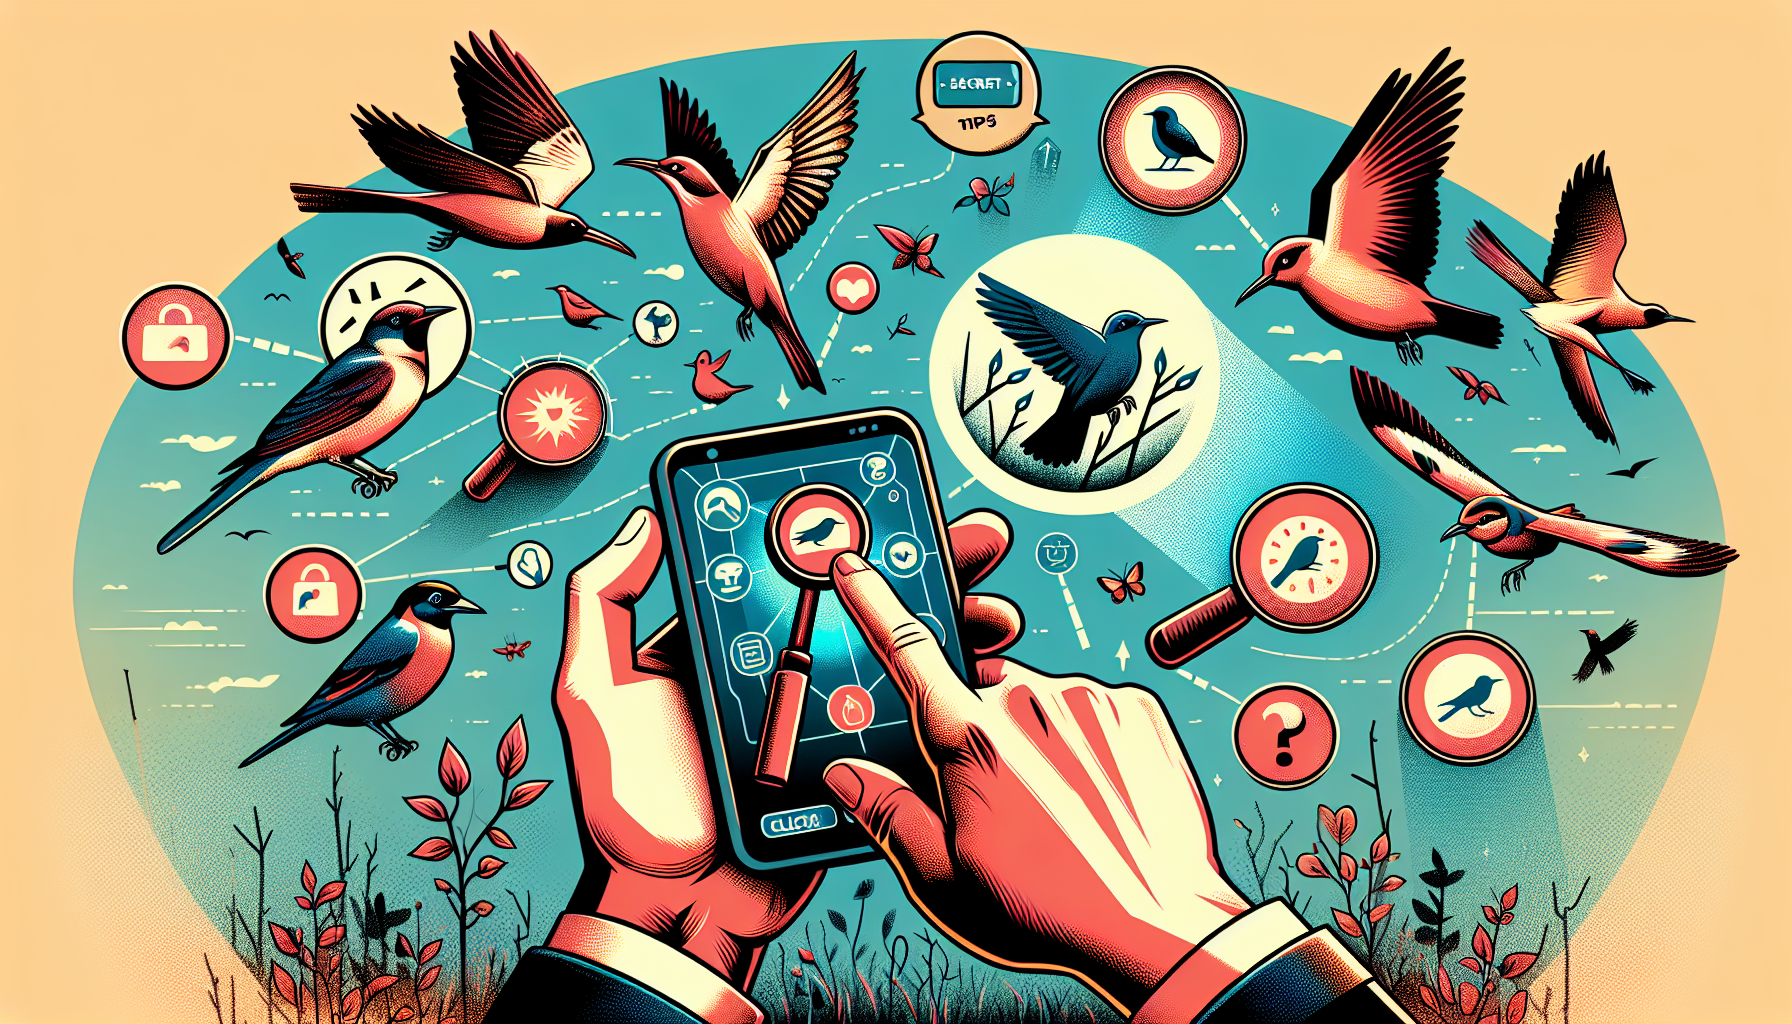 opdag de bedste fuglekiggeri-apps, der kan låse op for dit potentiale og forbedre din fuglekiggerioplevelse.